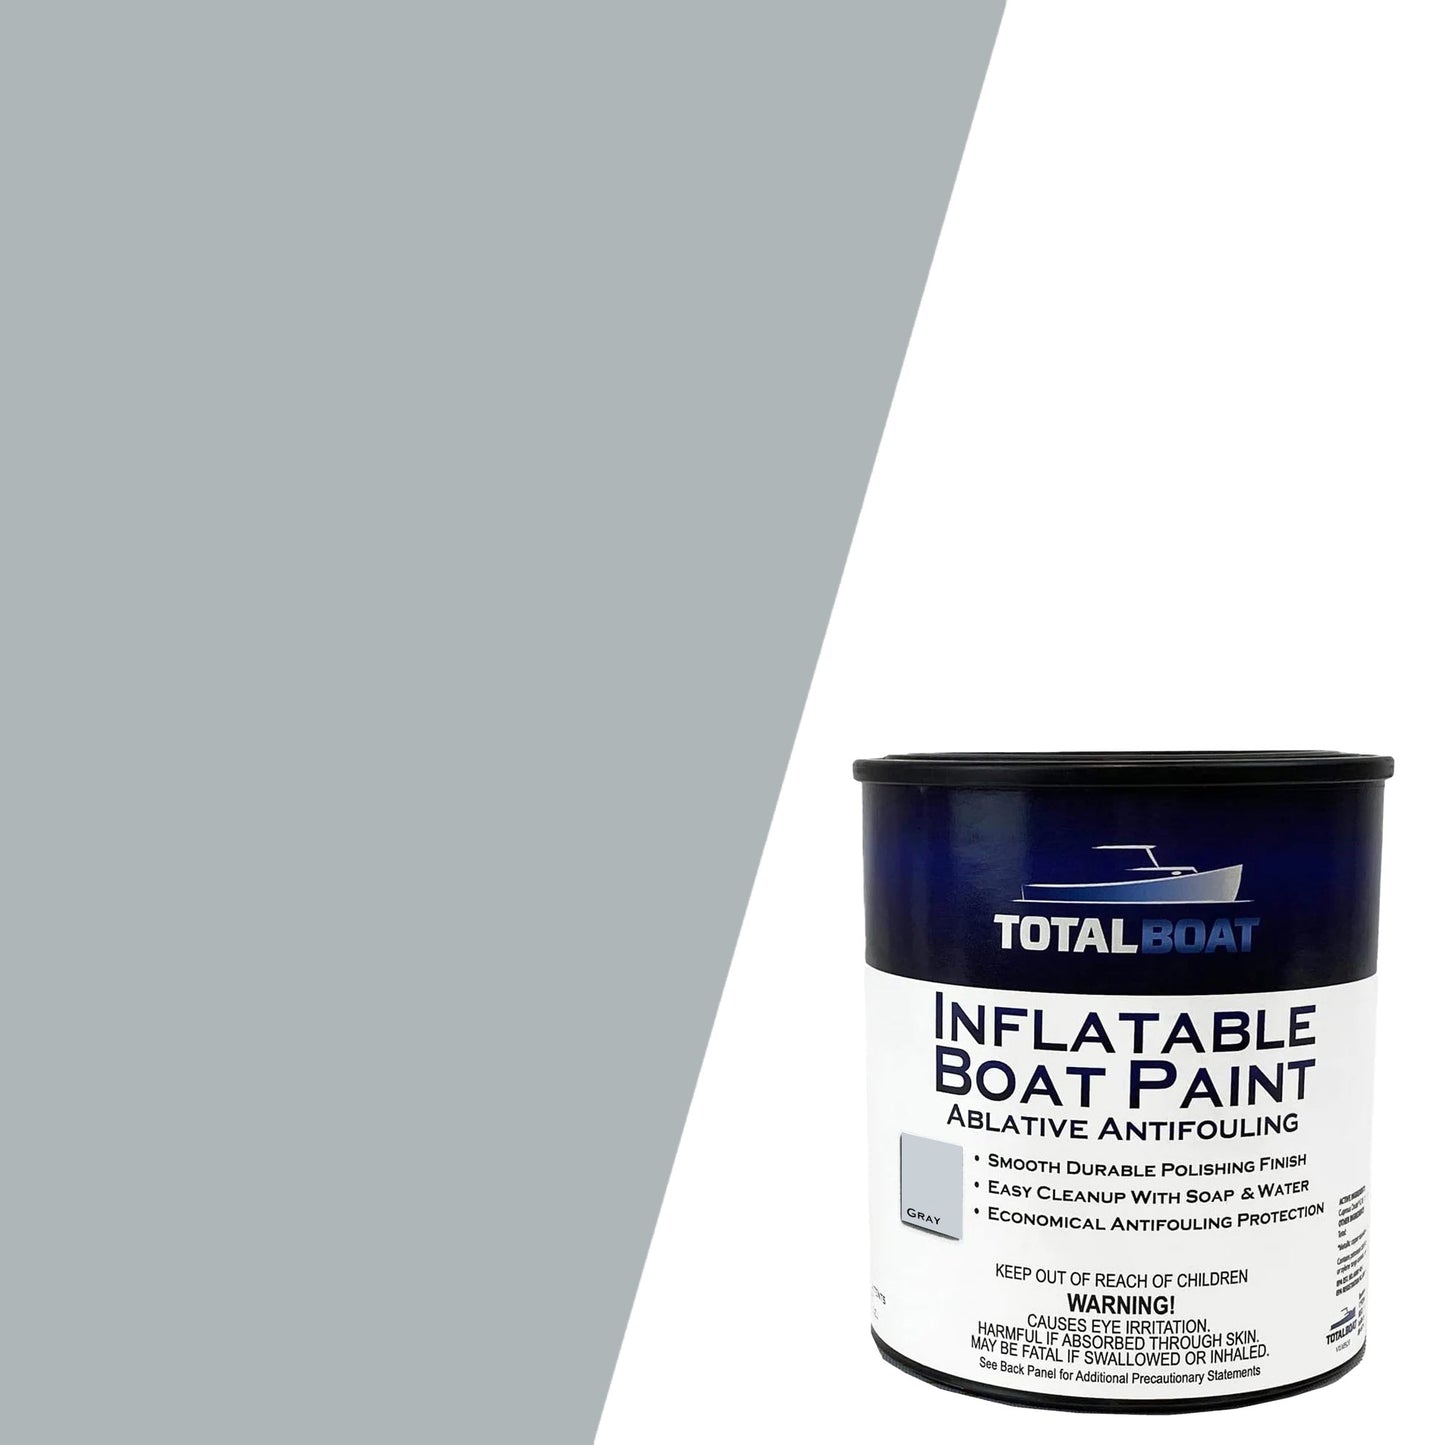 TotalBoat Underdog Marine Antifouling Bottom Paint - My Boat Life